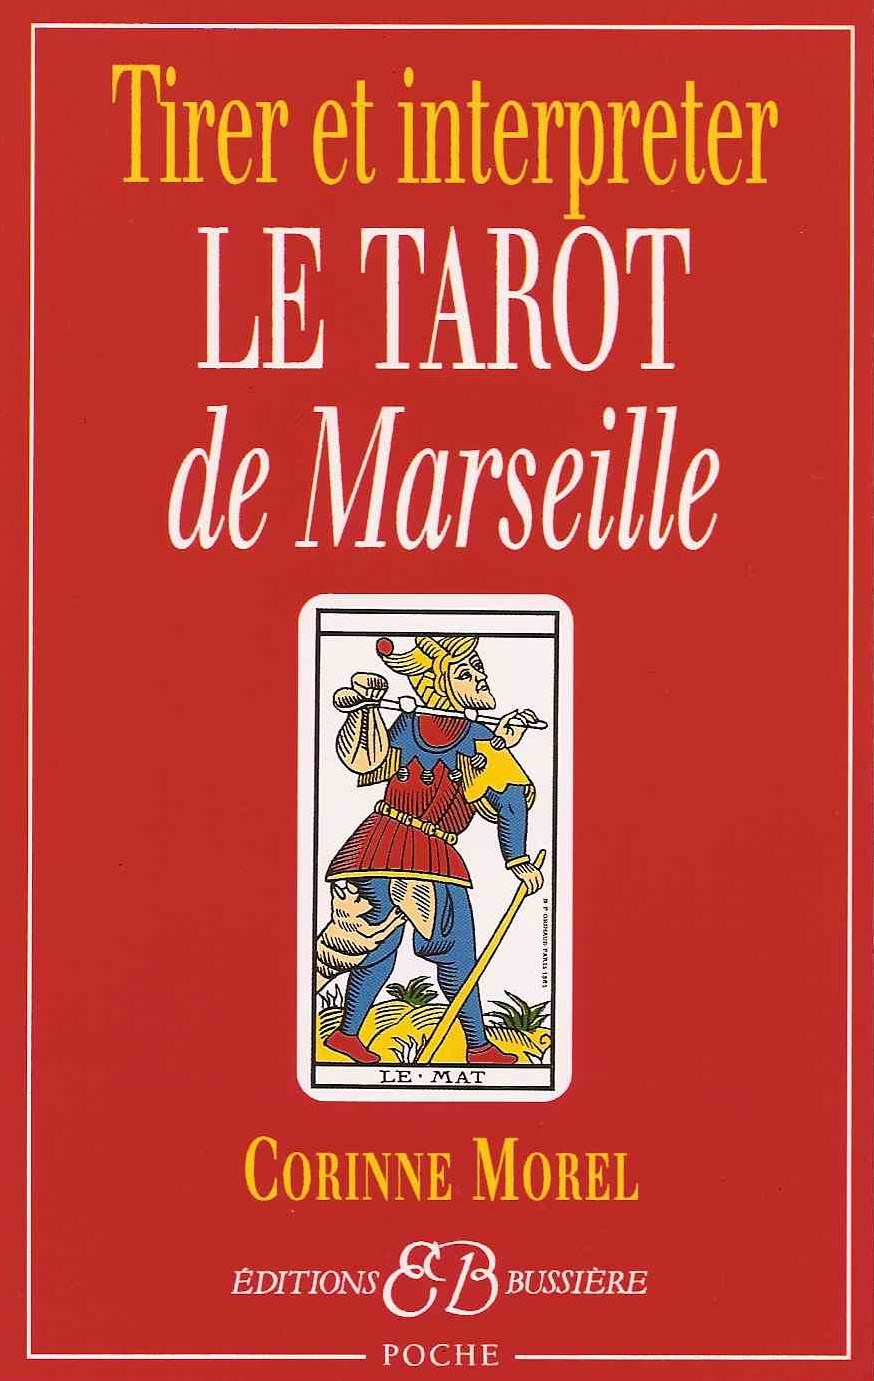 Les tirages du Tarot de Marseille